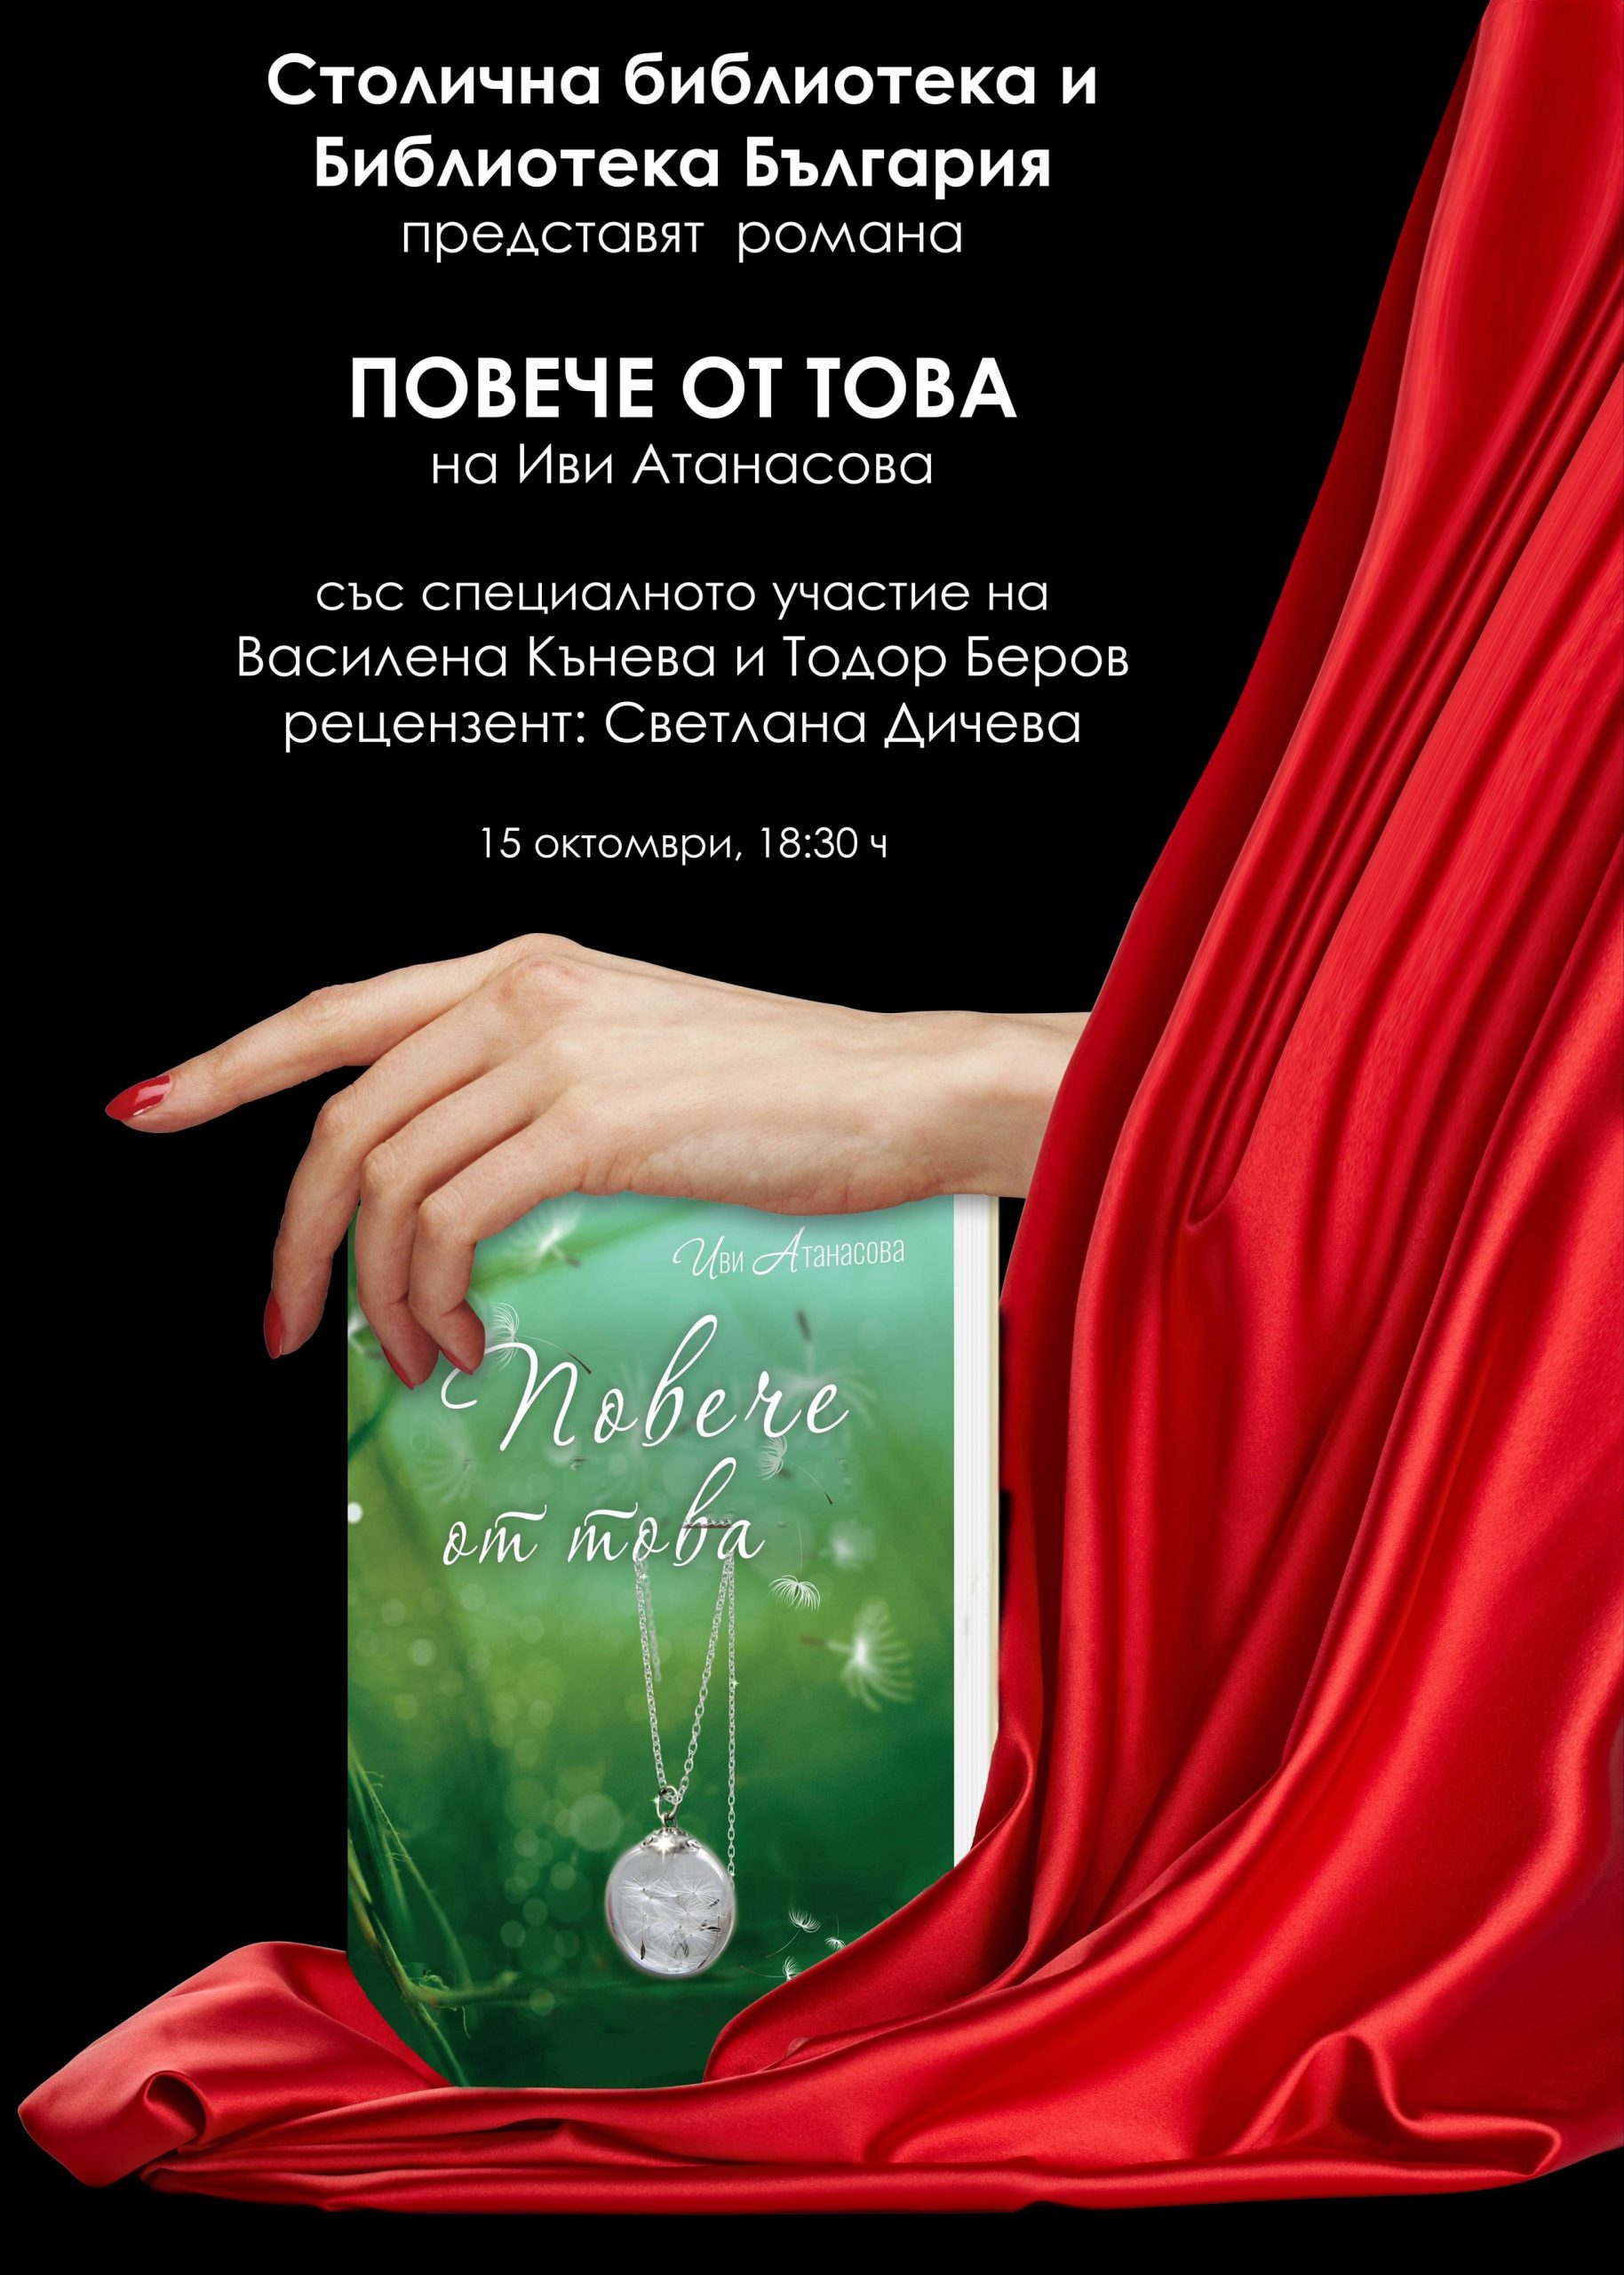 "ПОВЕЧЕ ОТ ТОВА" - премиера на роман от Иви Атанасова